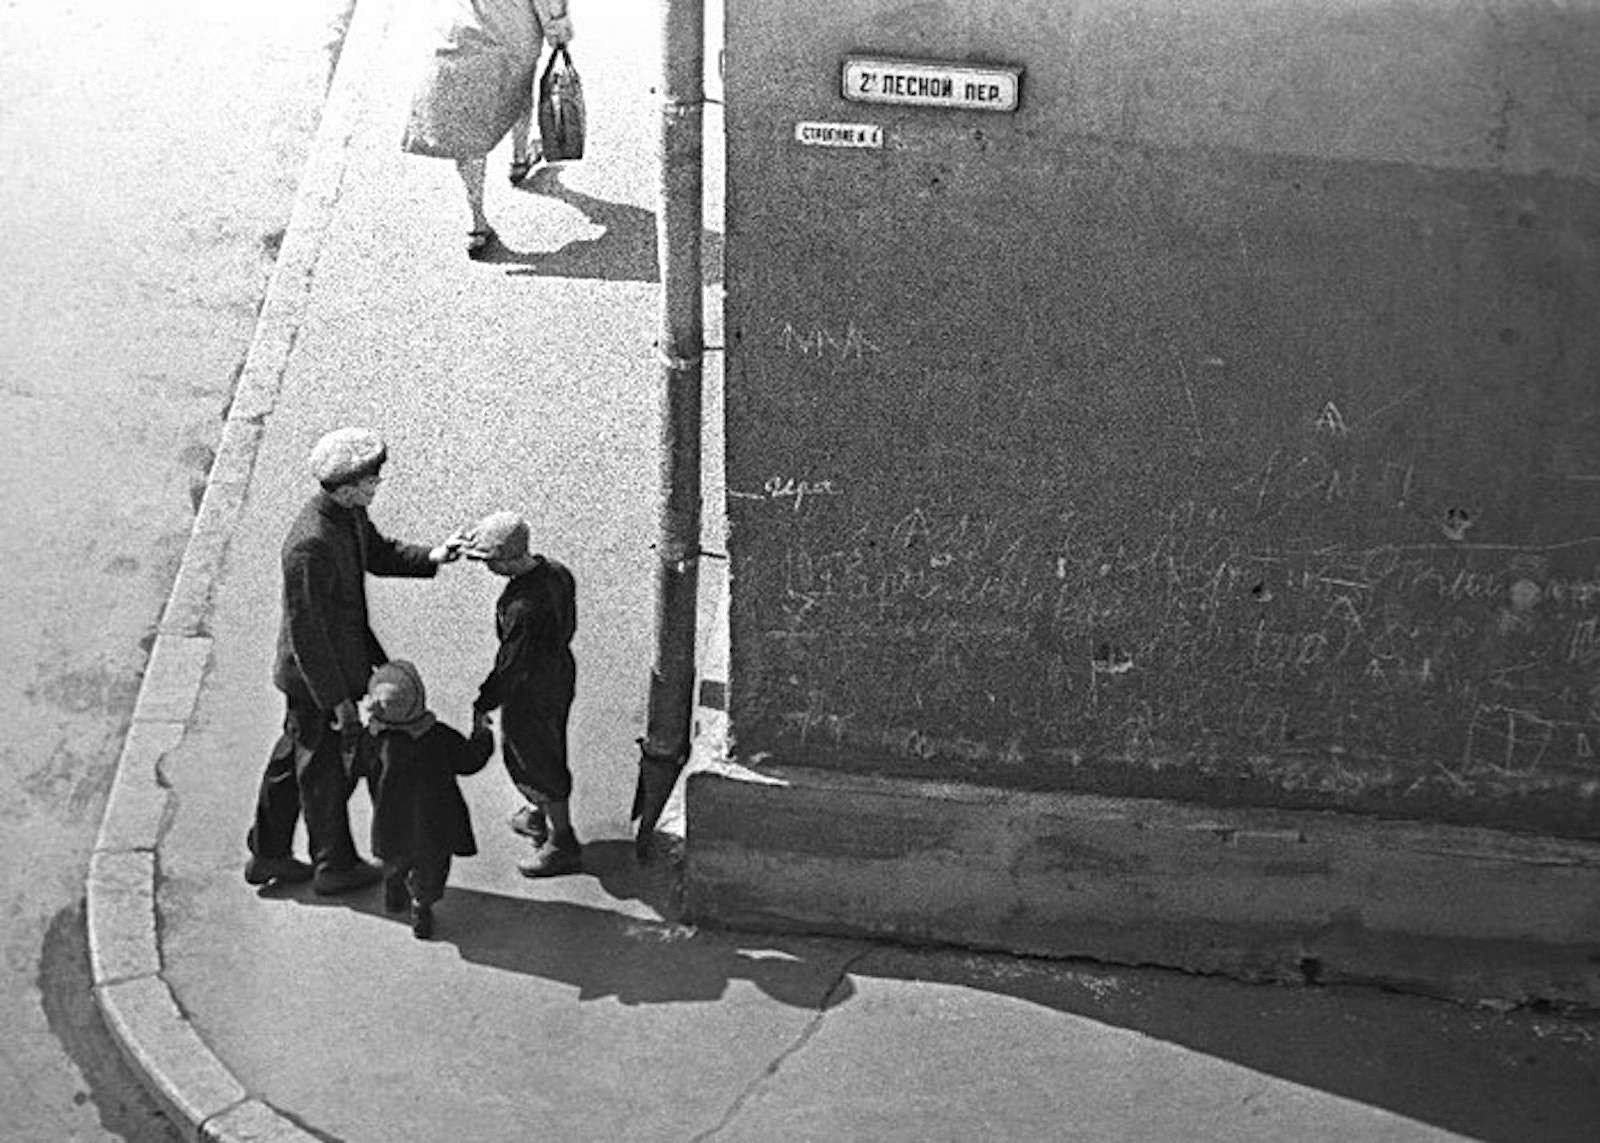 第2レスノイ通りの曲がり角にて、1958年